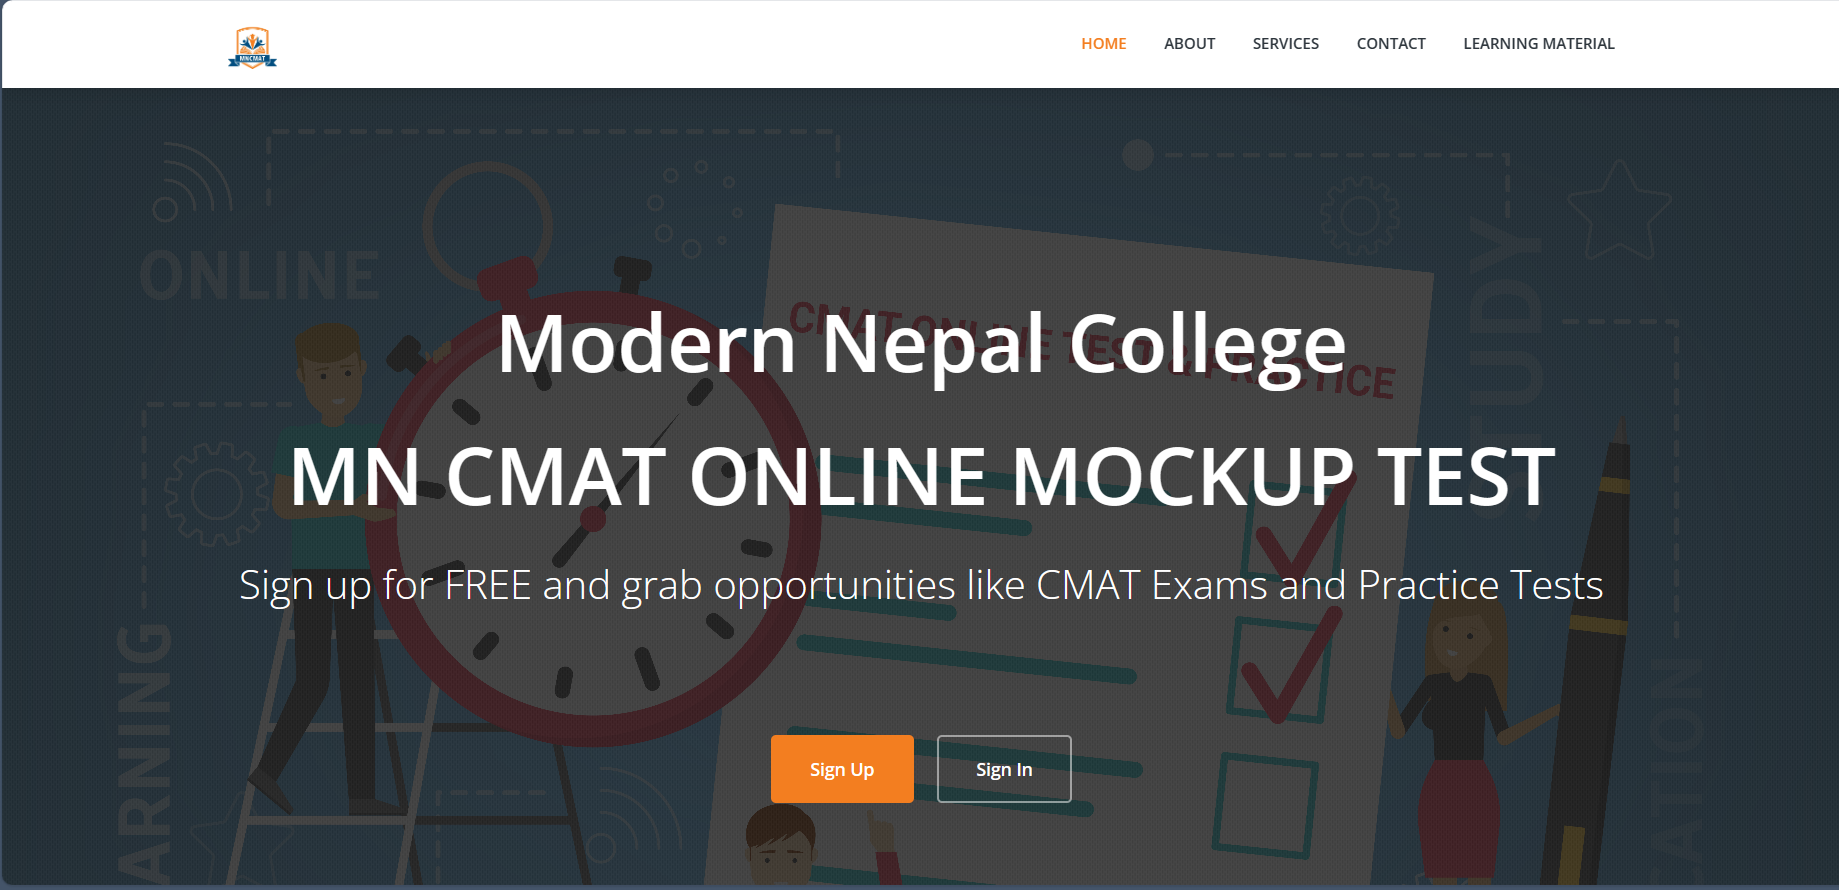 MNCMAT: an online CMAT test application.